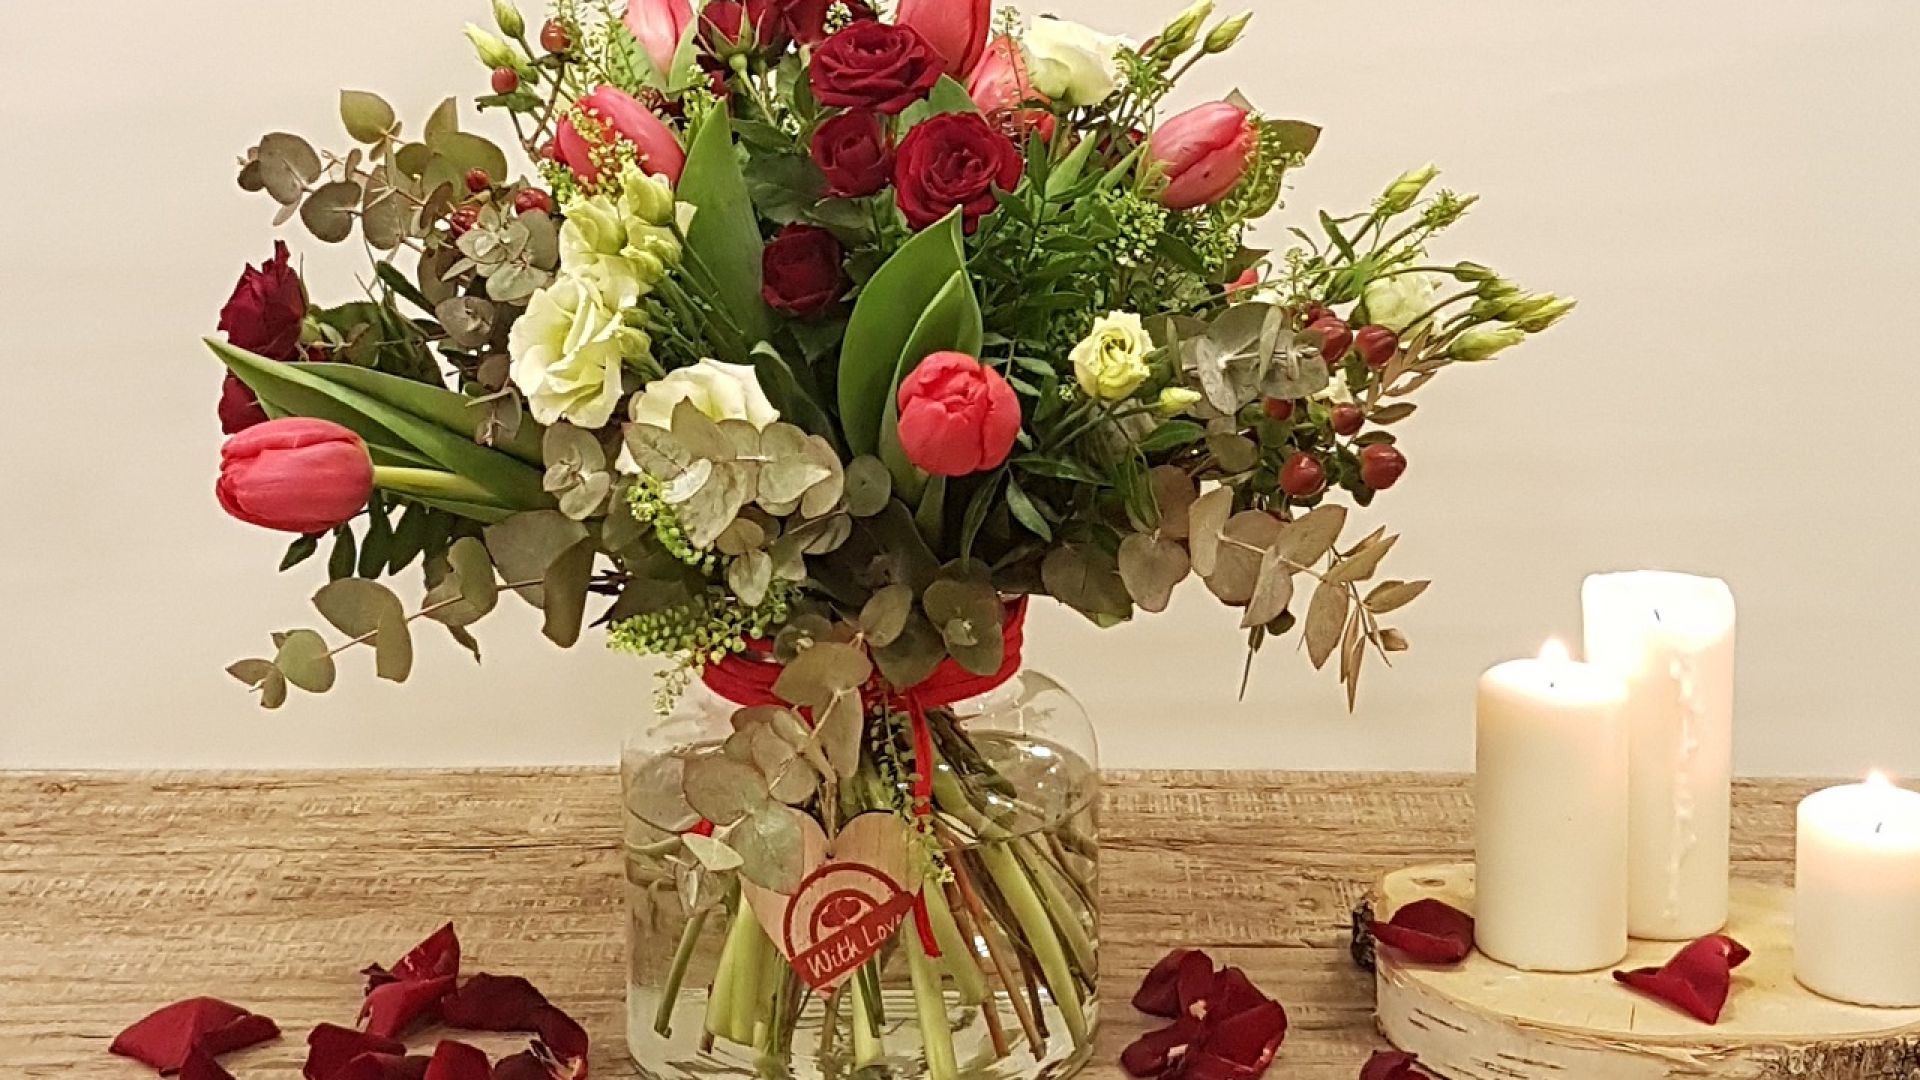 Flores para San Valentín en nuestra floristería en Madrid, aviva la llama del amor - ▷Floristería Madrid-Flores a domicilio Madrid▷Floristería Amborella